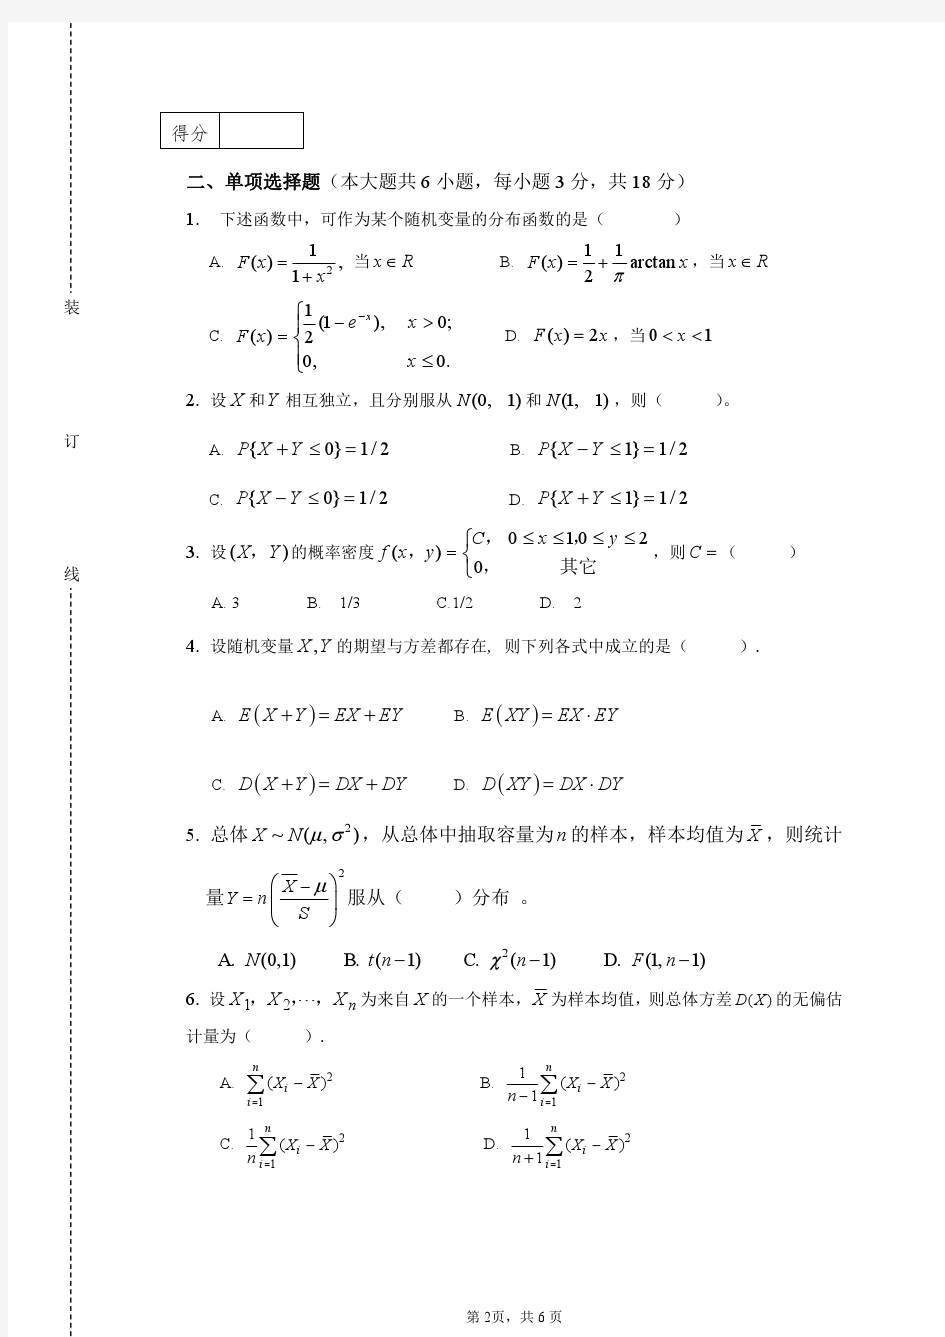 华南农业大学2014-2015大学数学2期末试卷(A)及答案